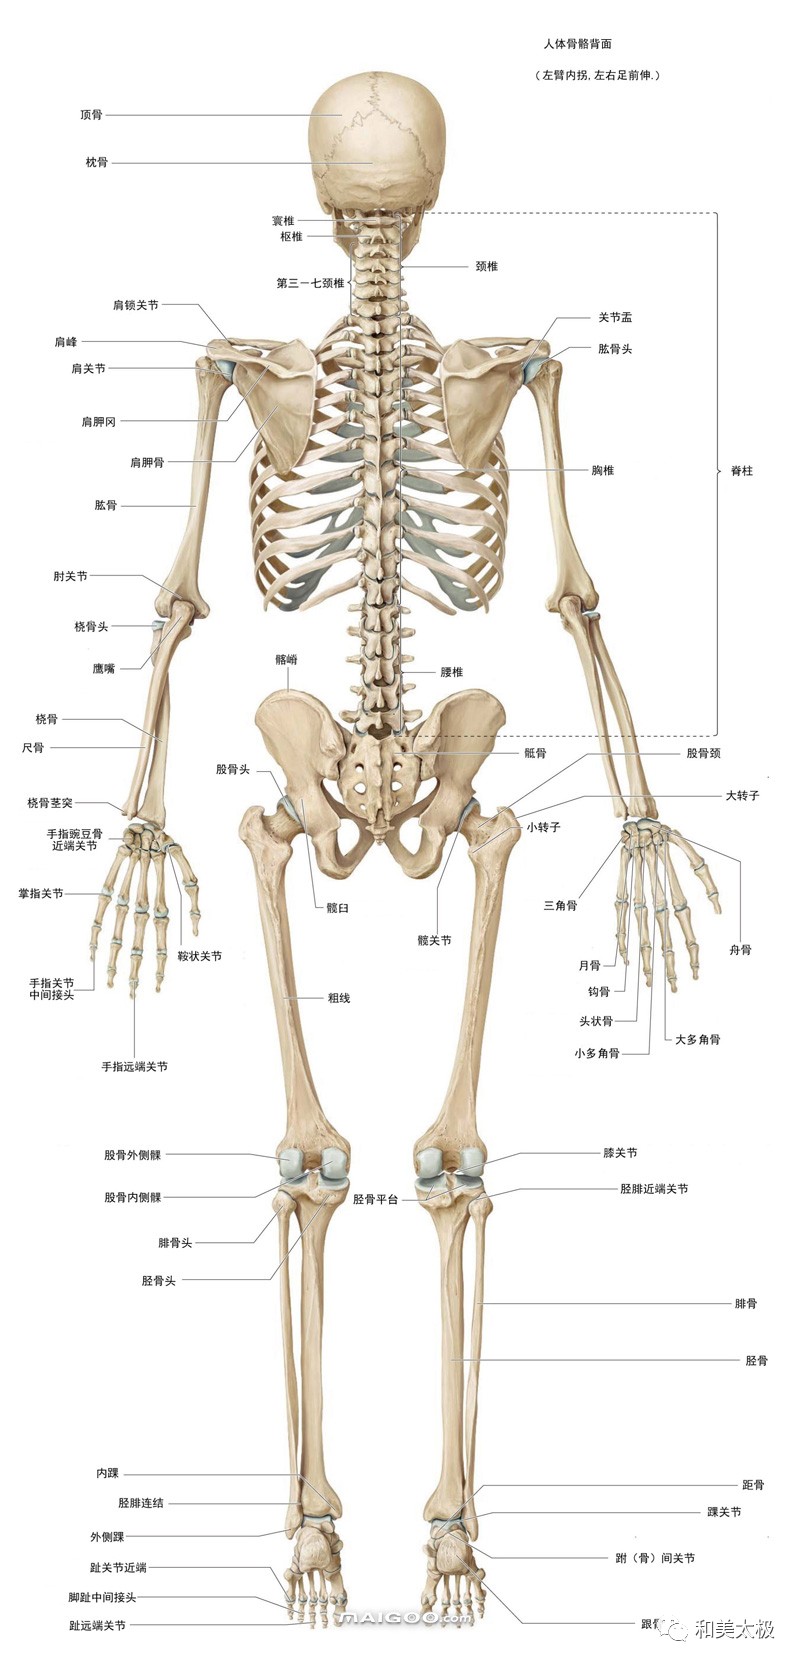 儿童有2块髂骨,2块坐骨和2 块耻骨,到成人就合并成为